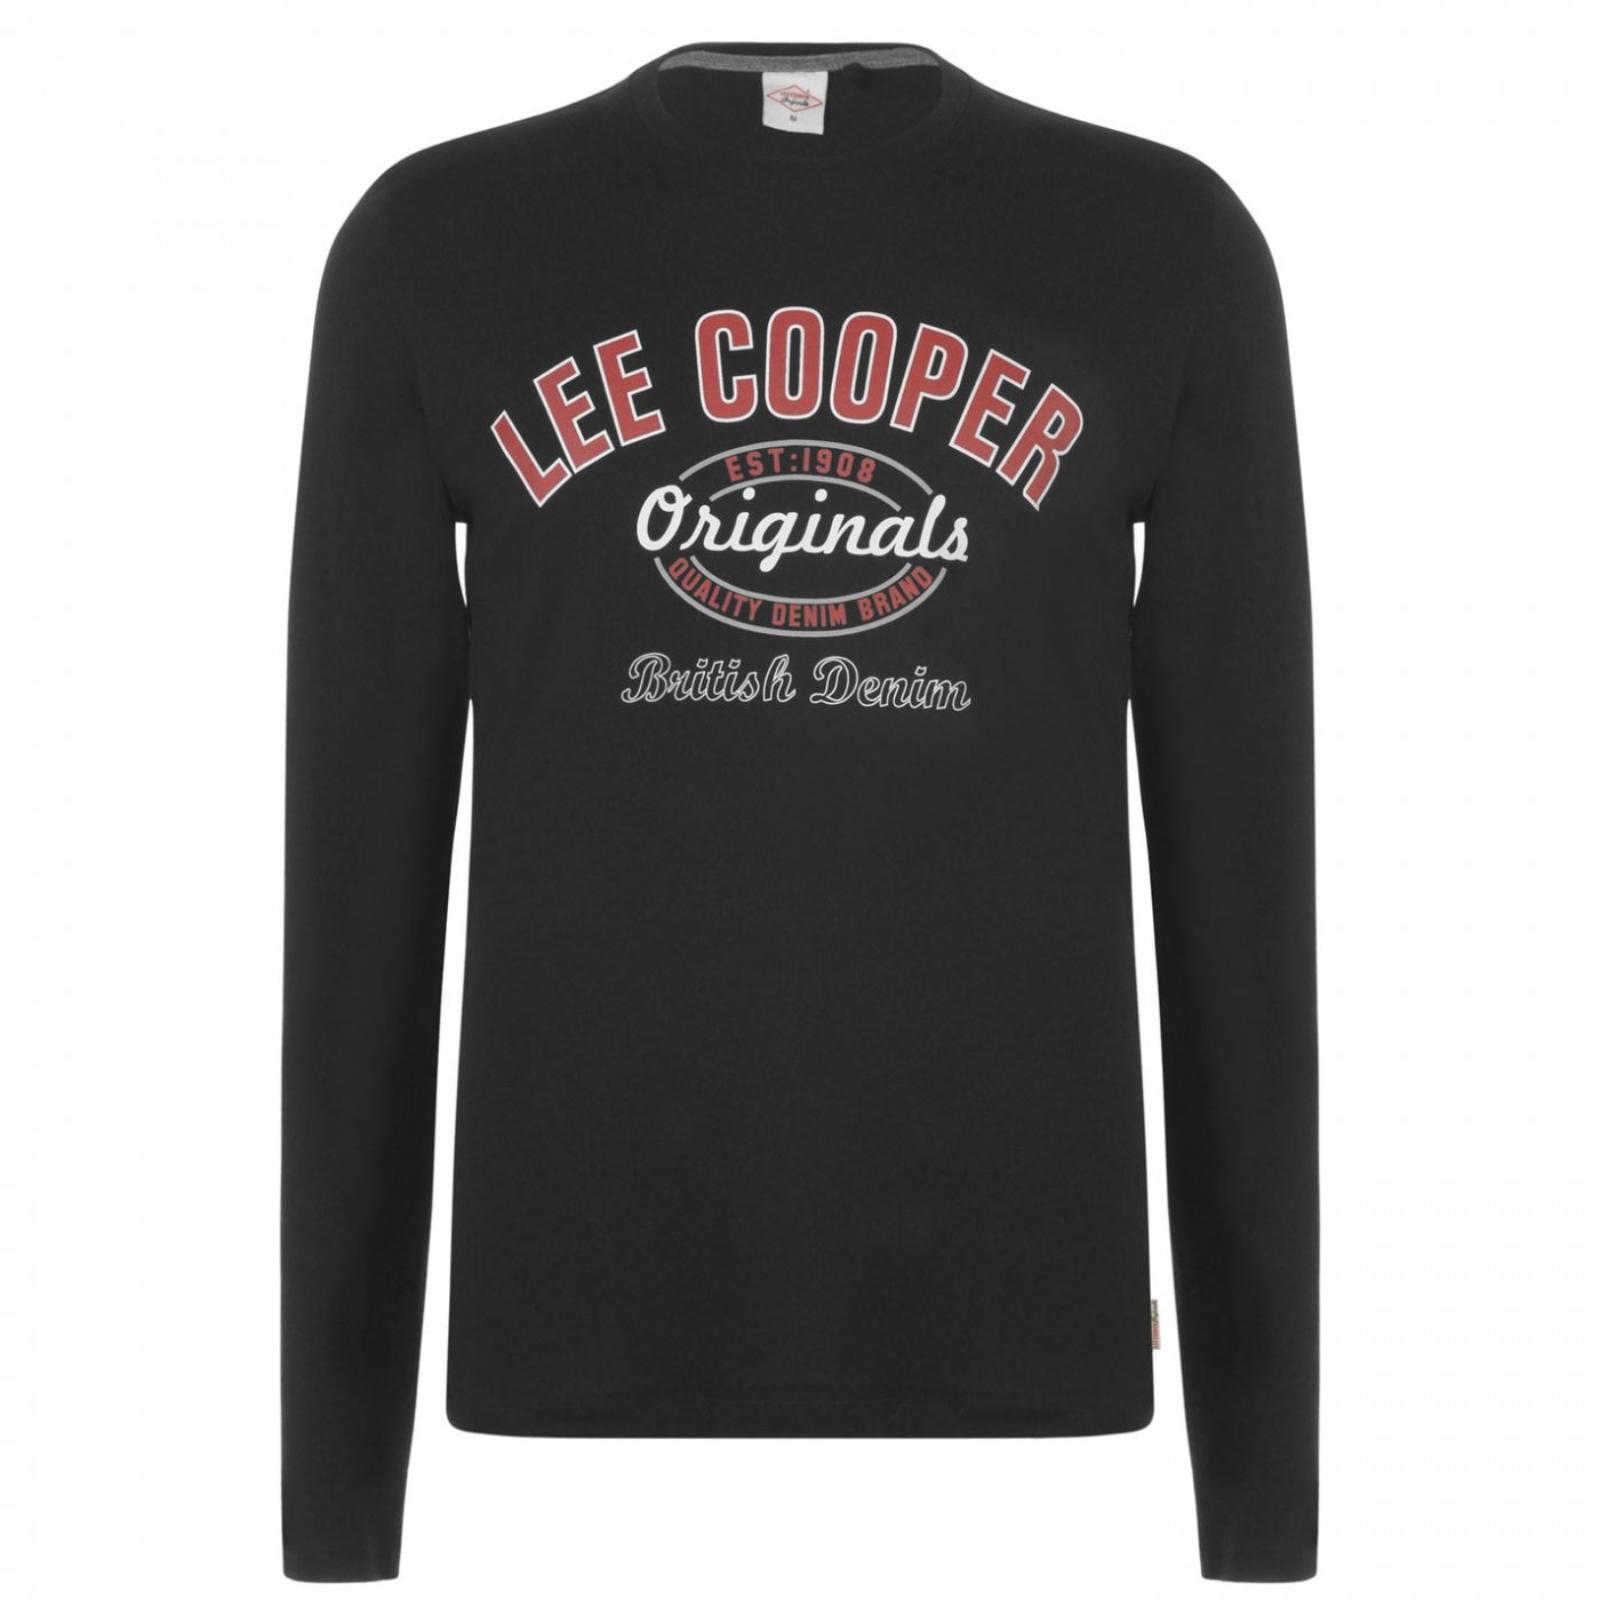 Pánske čierne tričko LEE COOPER, dlhý rukáv, veľkosť 4XL (XXXXL) - Pánske oblečenie